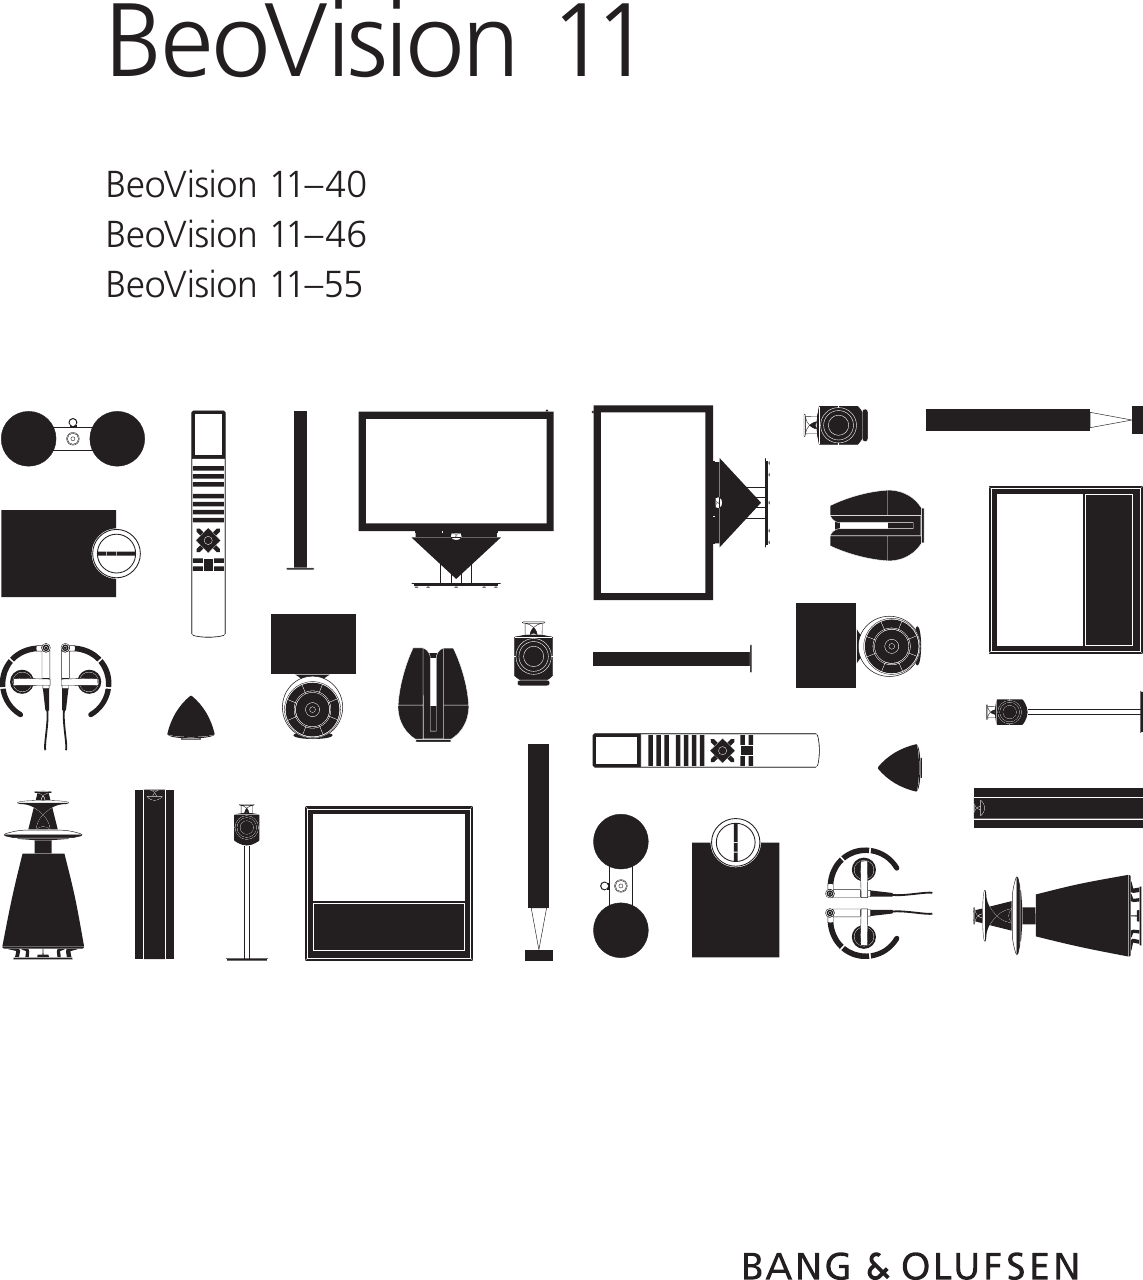 BeoVision 11 BeoVision11–40 BeoVision11–46 BeoVision11–55